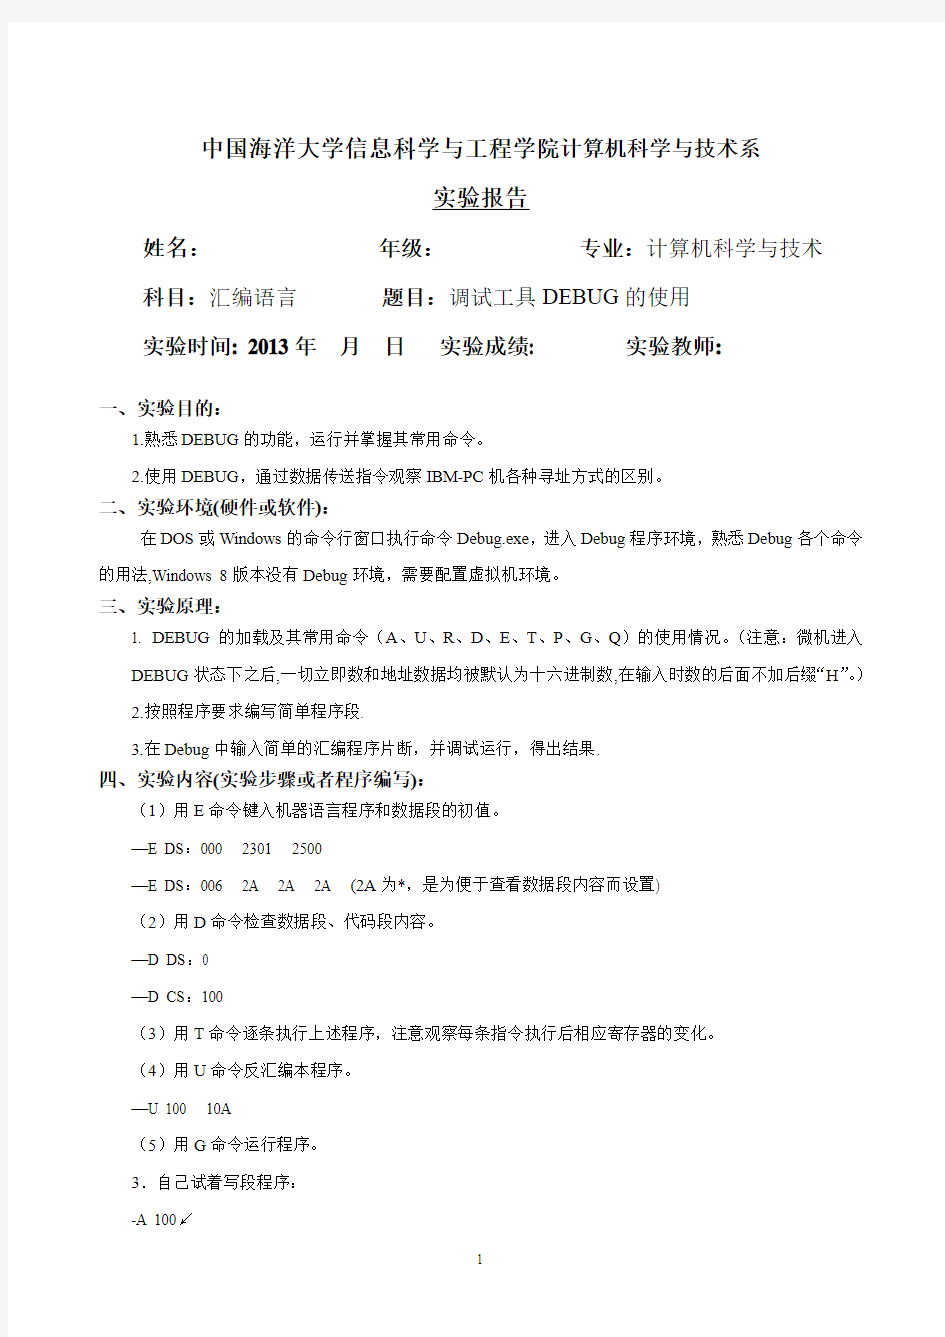 中国海洋大学计算机科学与技术系-实验报告(样本)